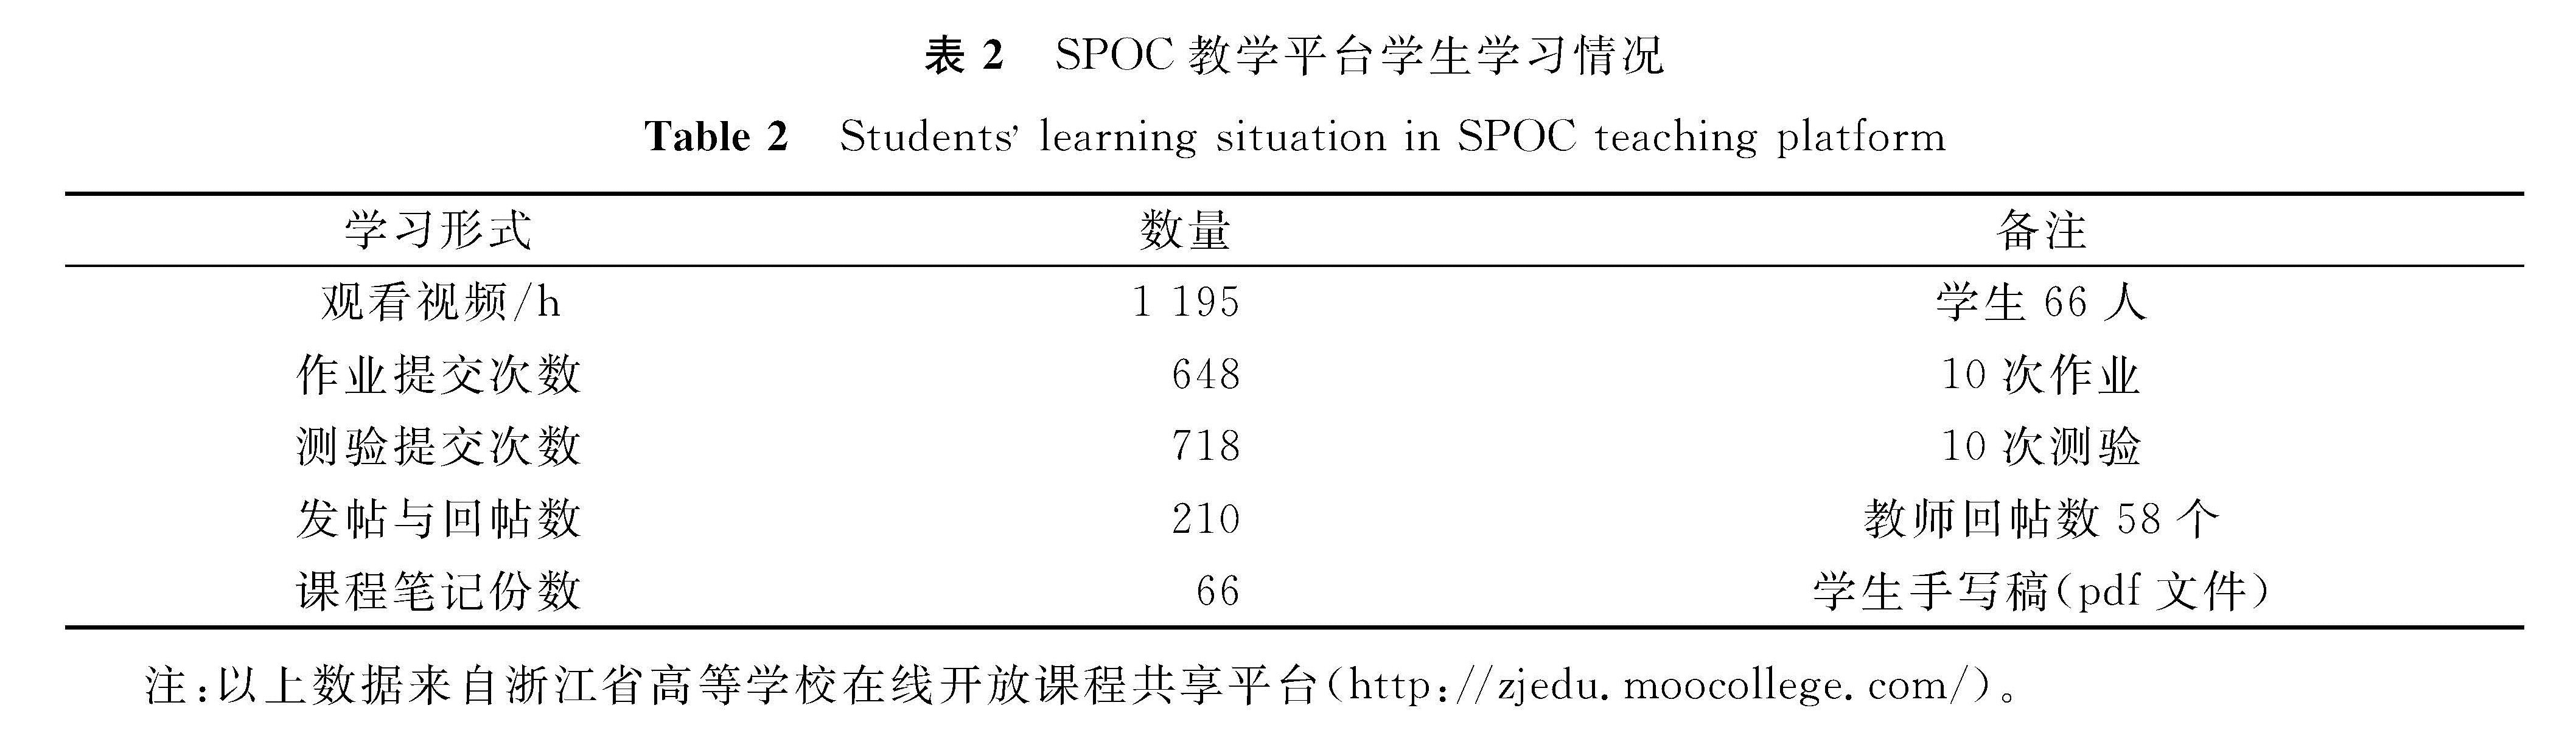 表2 SPOC教学平台学生学习情况<br/>Table 2 Students learning situation in SPOC teaching platform